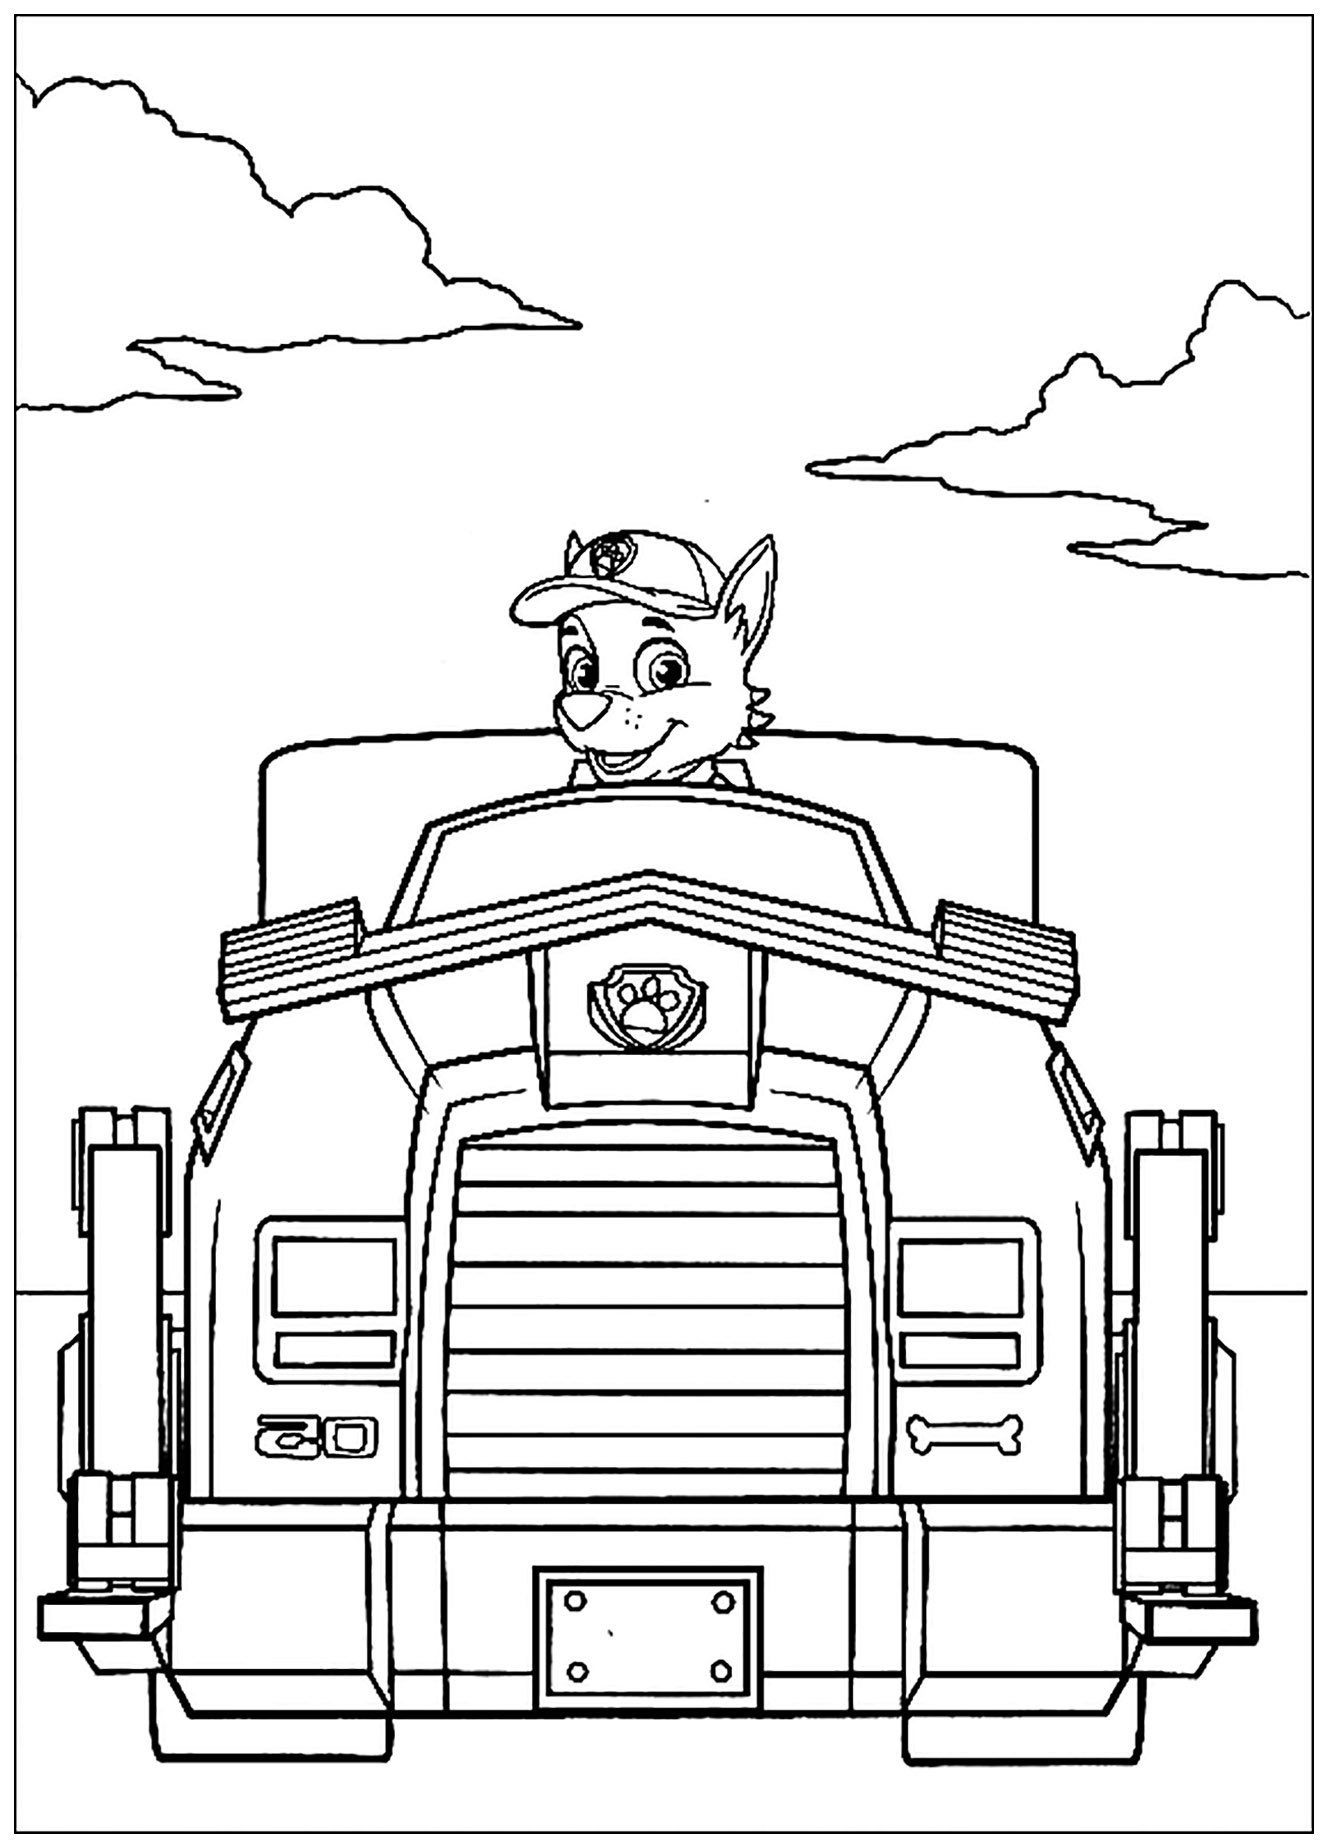 Pat Patrol : harvesting vehicle - 2 - Paw Patrol Kids Coloring Pages